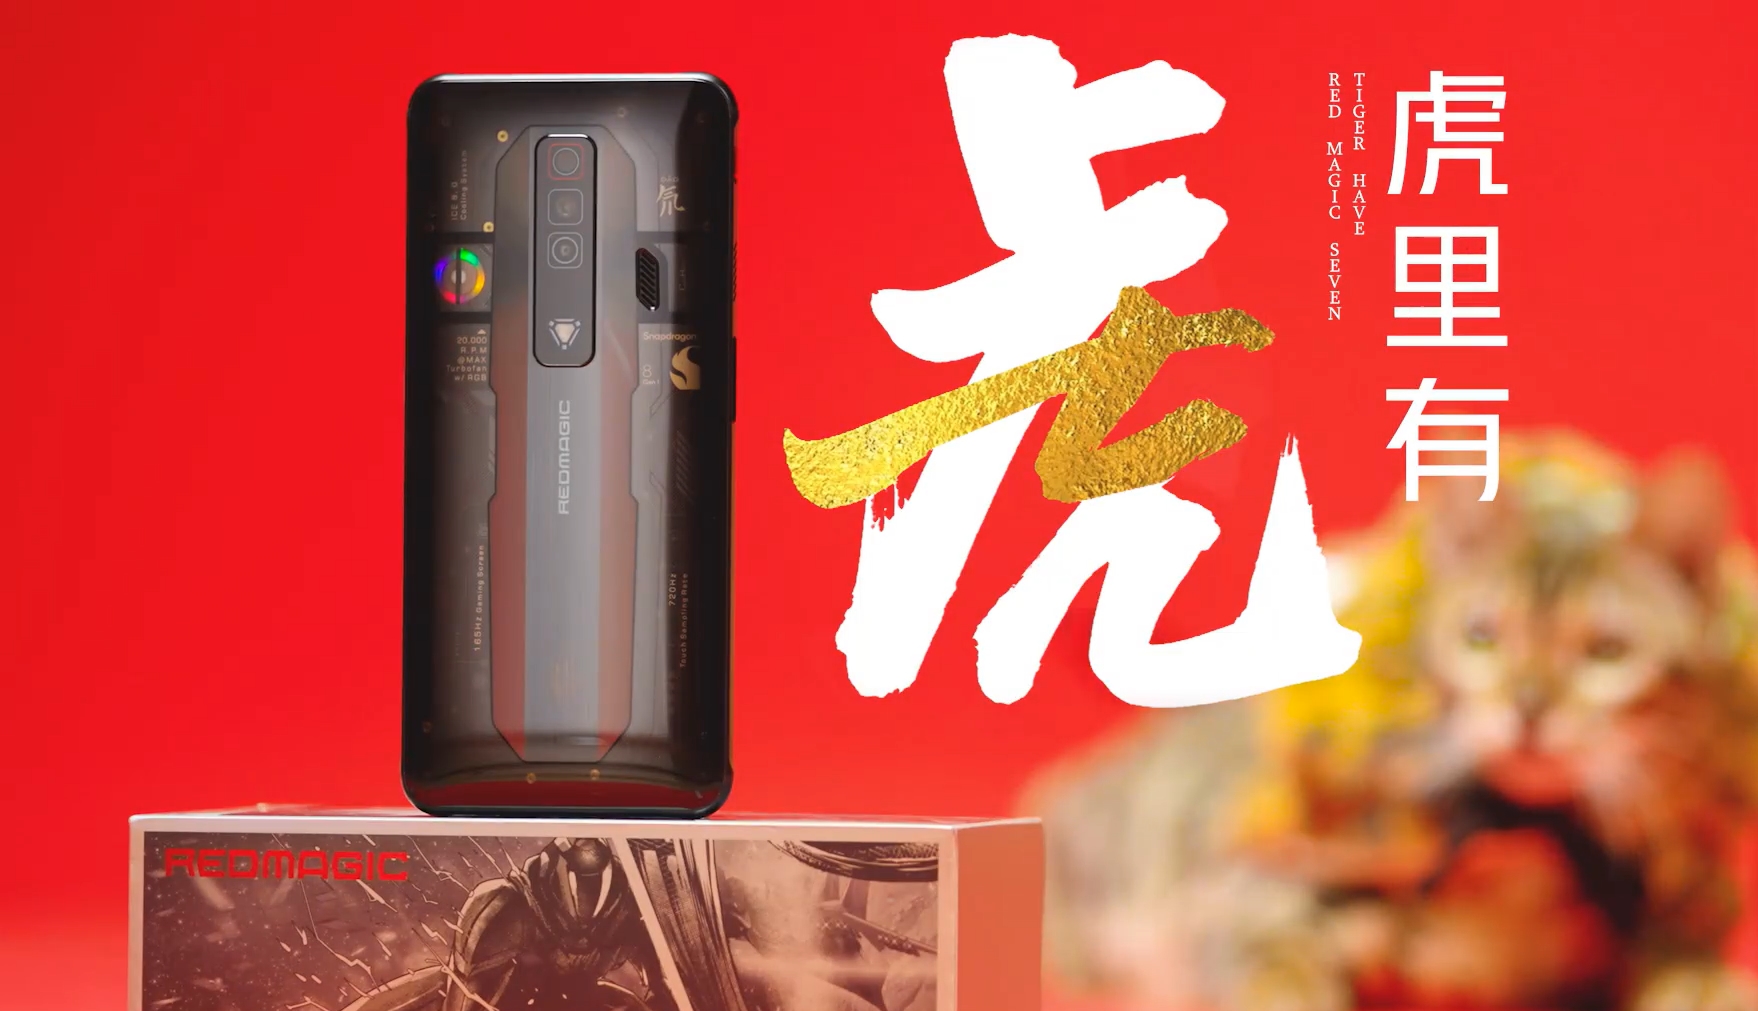 Panneau arrière transparent et triple caméra : Nubia a montré le smartphone de jeu Red Magic 7 avant l'annonce